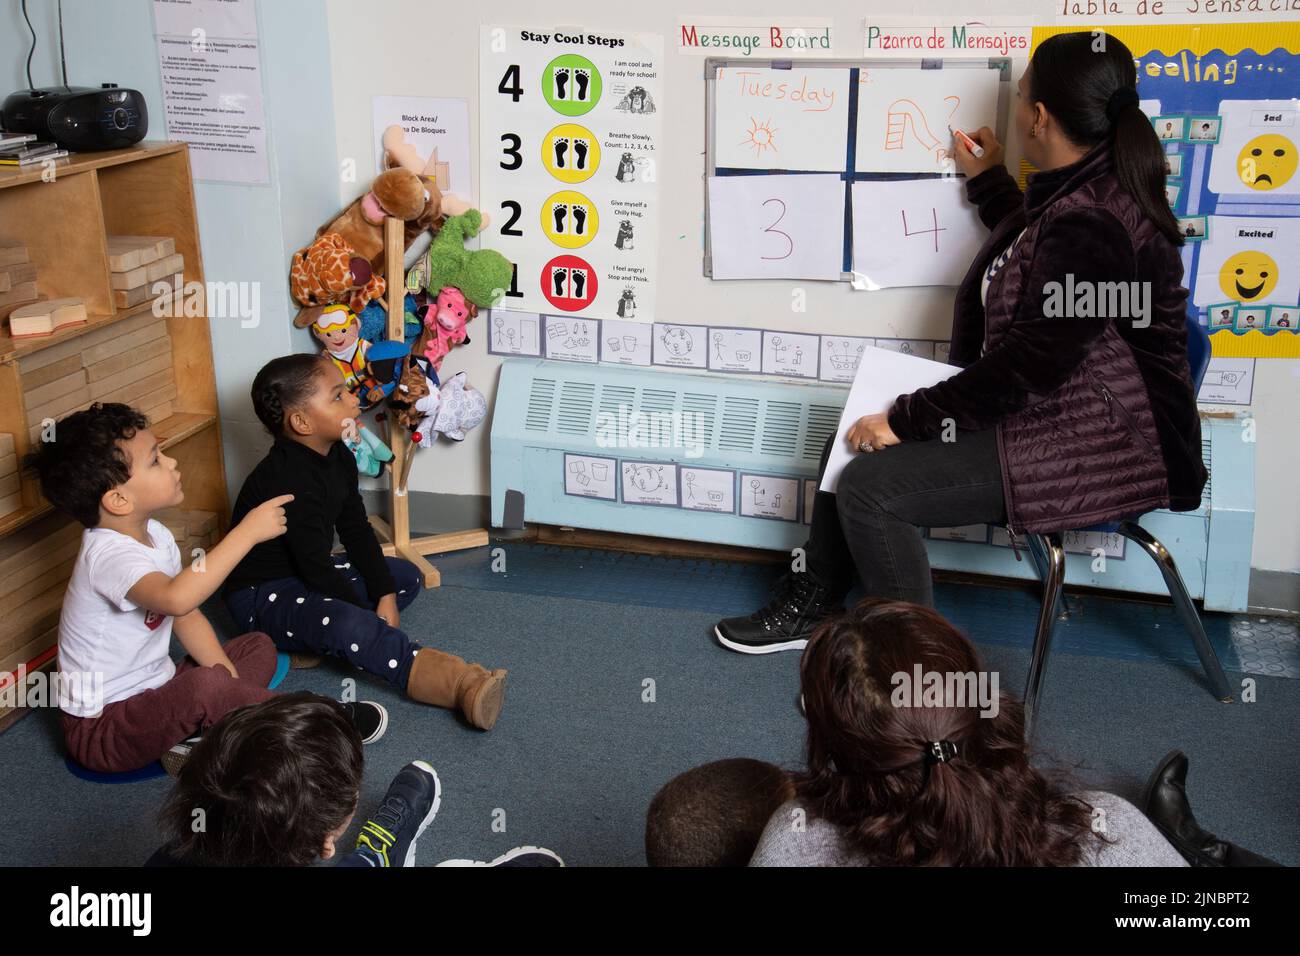 Educación Cuidado Infantil Preescolar Grupo de niños de 3 años con maestras en la reunión, letreros en inglés y español Foto de stock